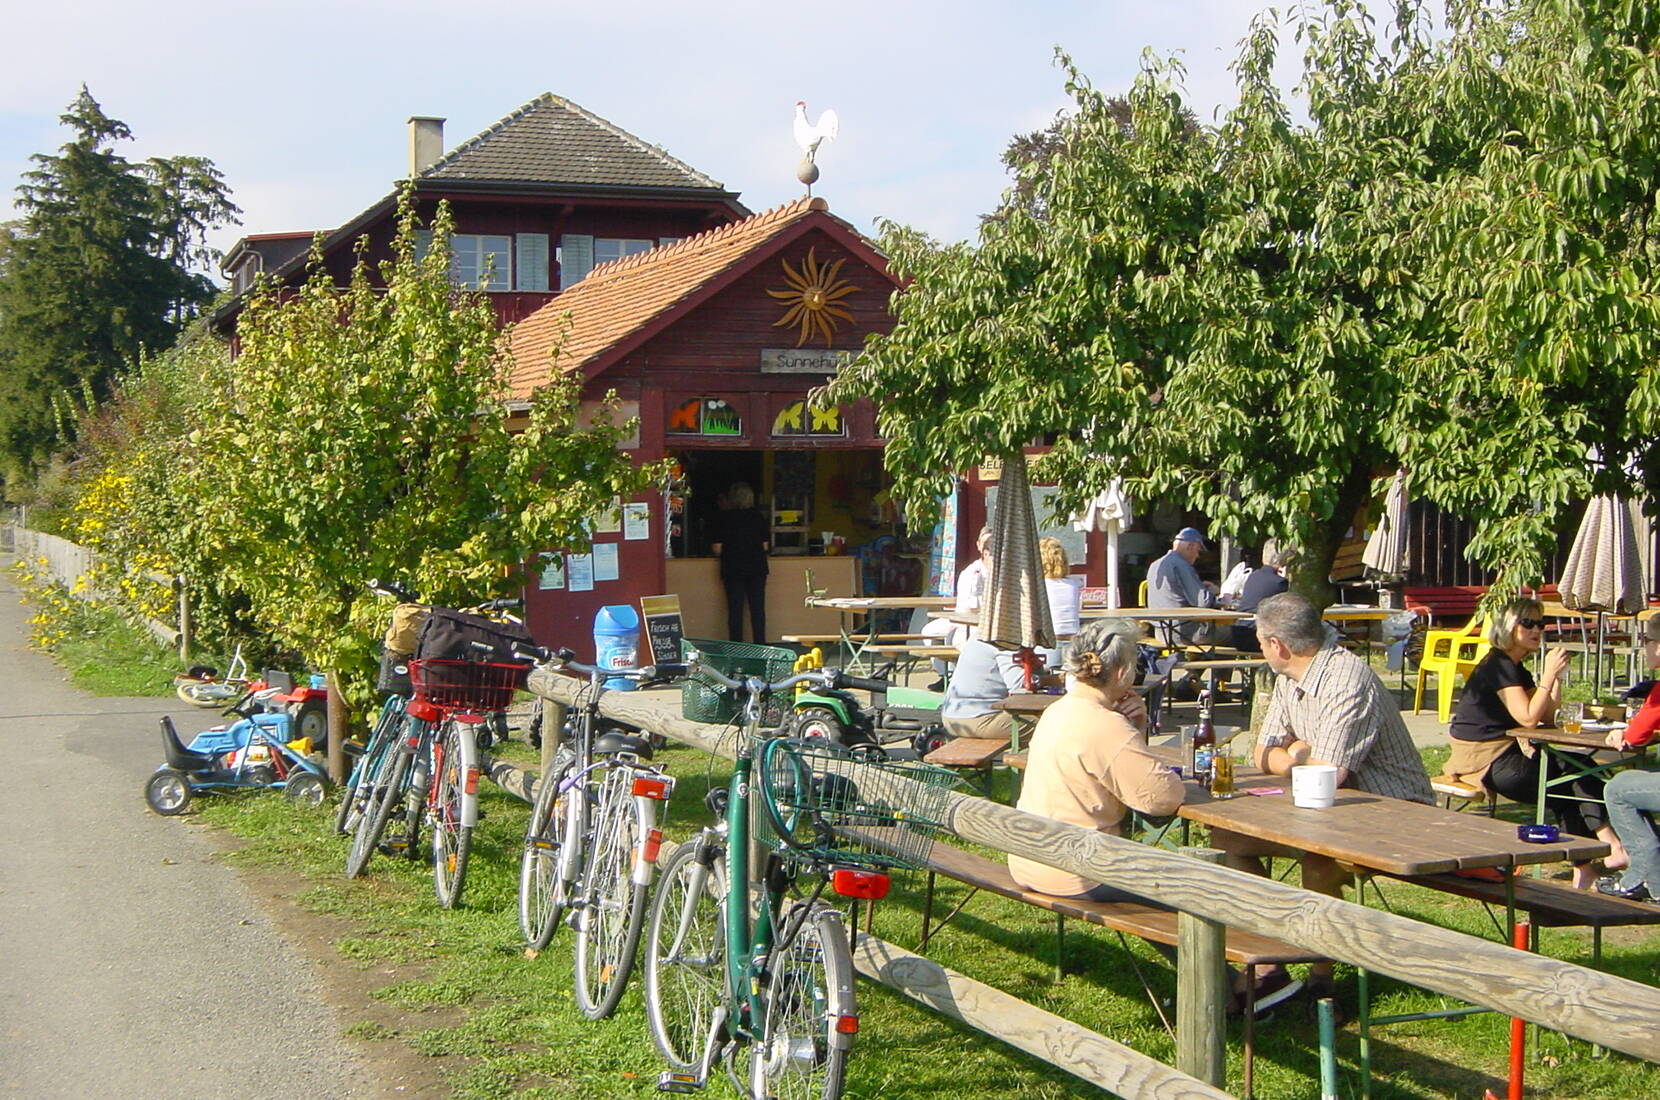 Familienausflug Sunnehüsli Güttingen am Bodensee. Unser Sunnehüsli bietet ein breites Angebot und wurde im Jahr 2011 als «velofreundliches Restaurant» ausgezeichnet.